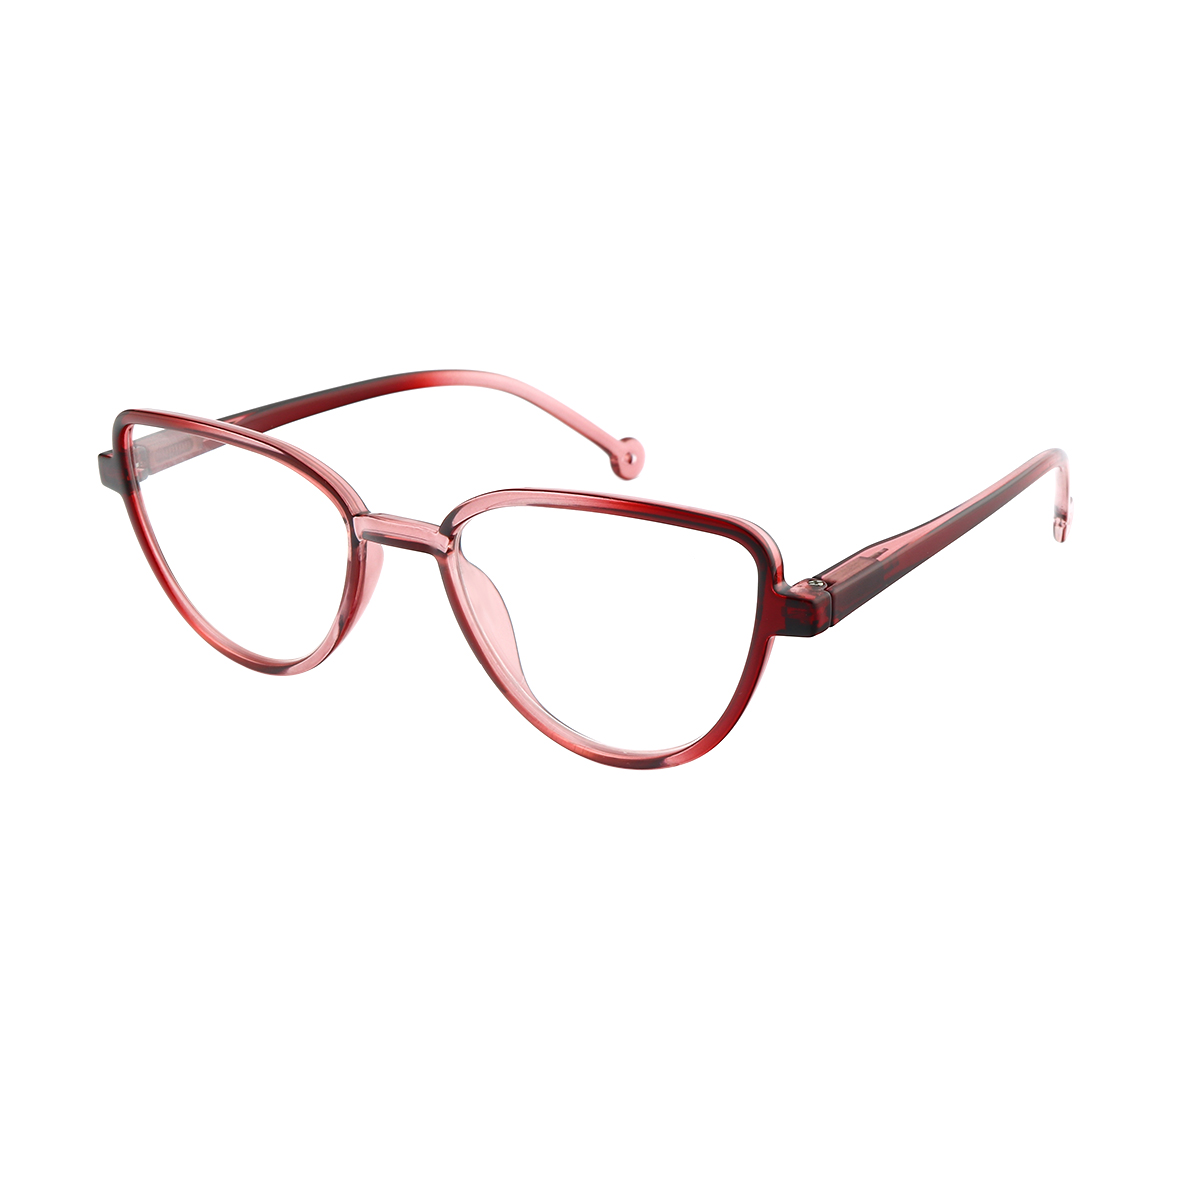 Glen - Cat-eye Red Reading Glasses for Women